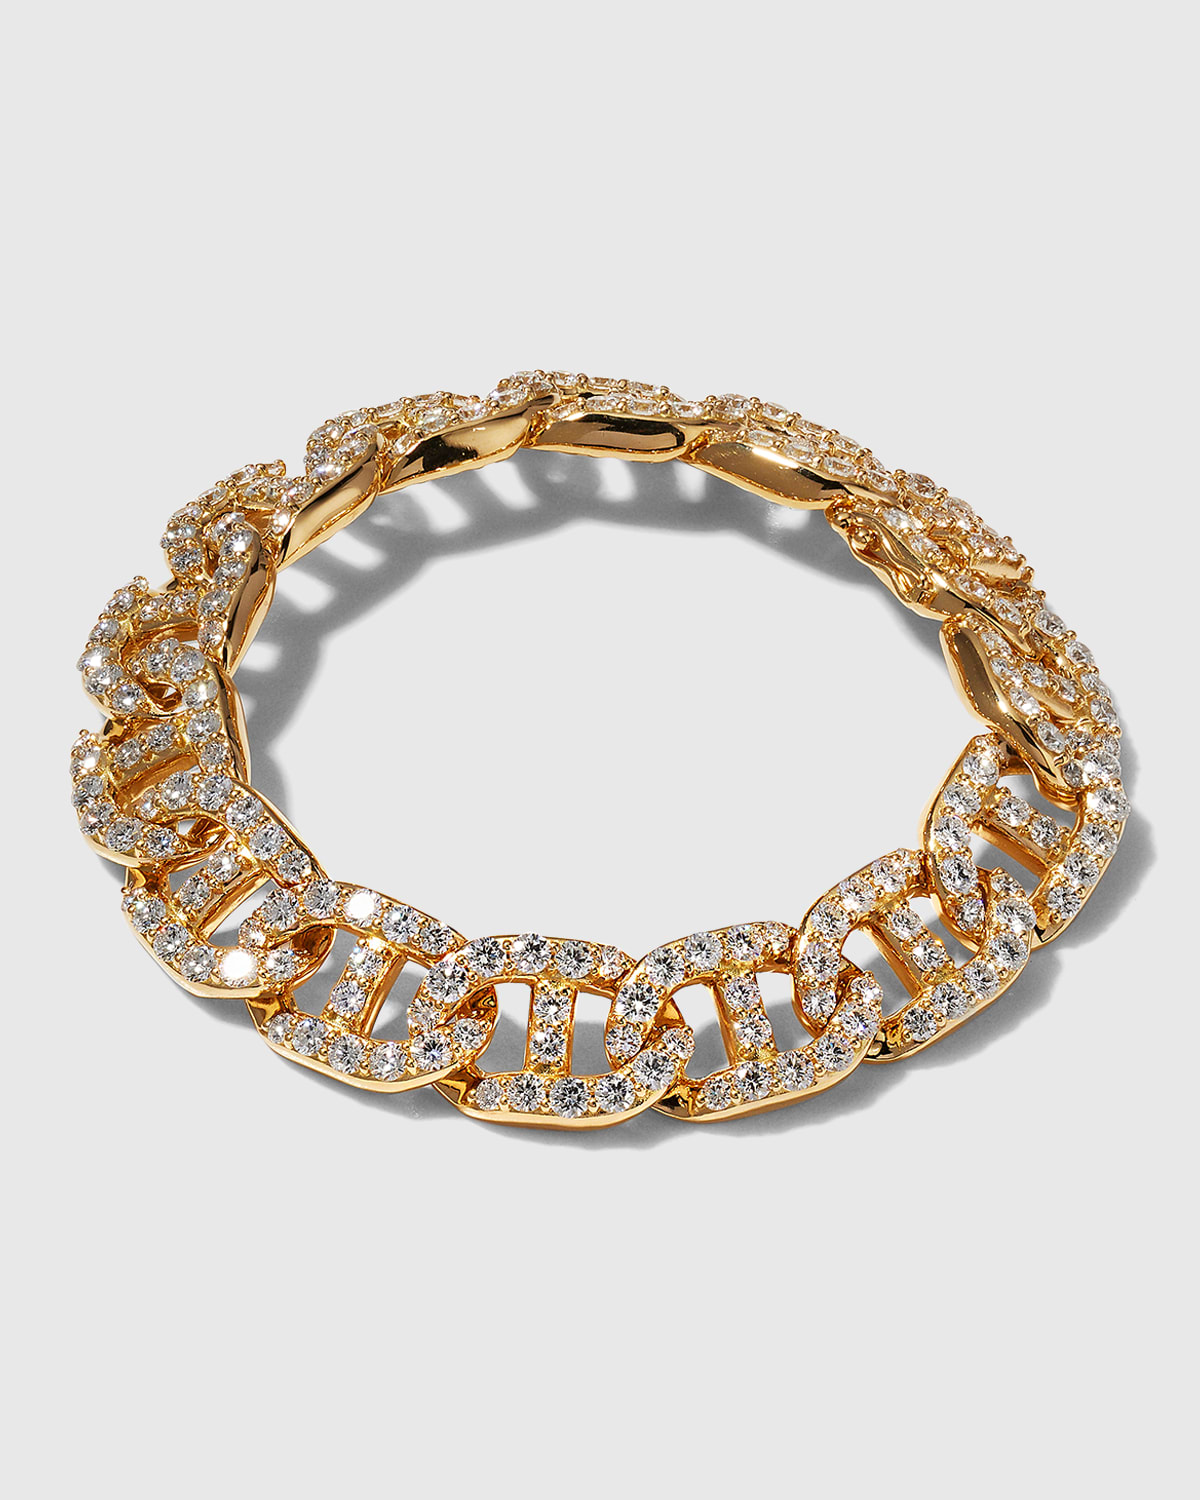 18k Gold Diamond Link Bracelet